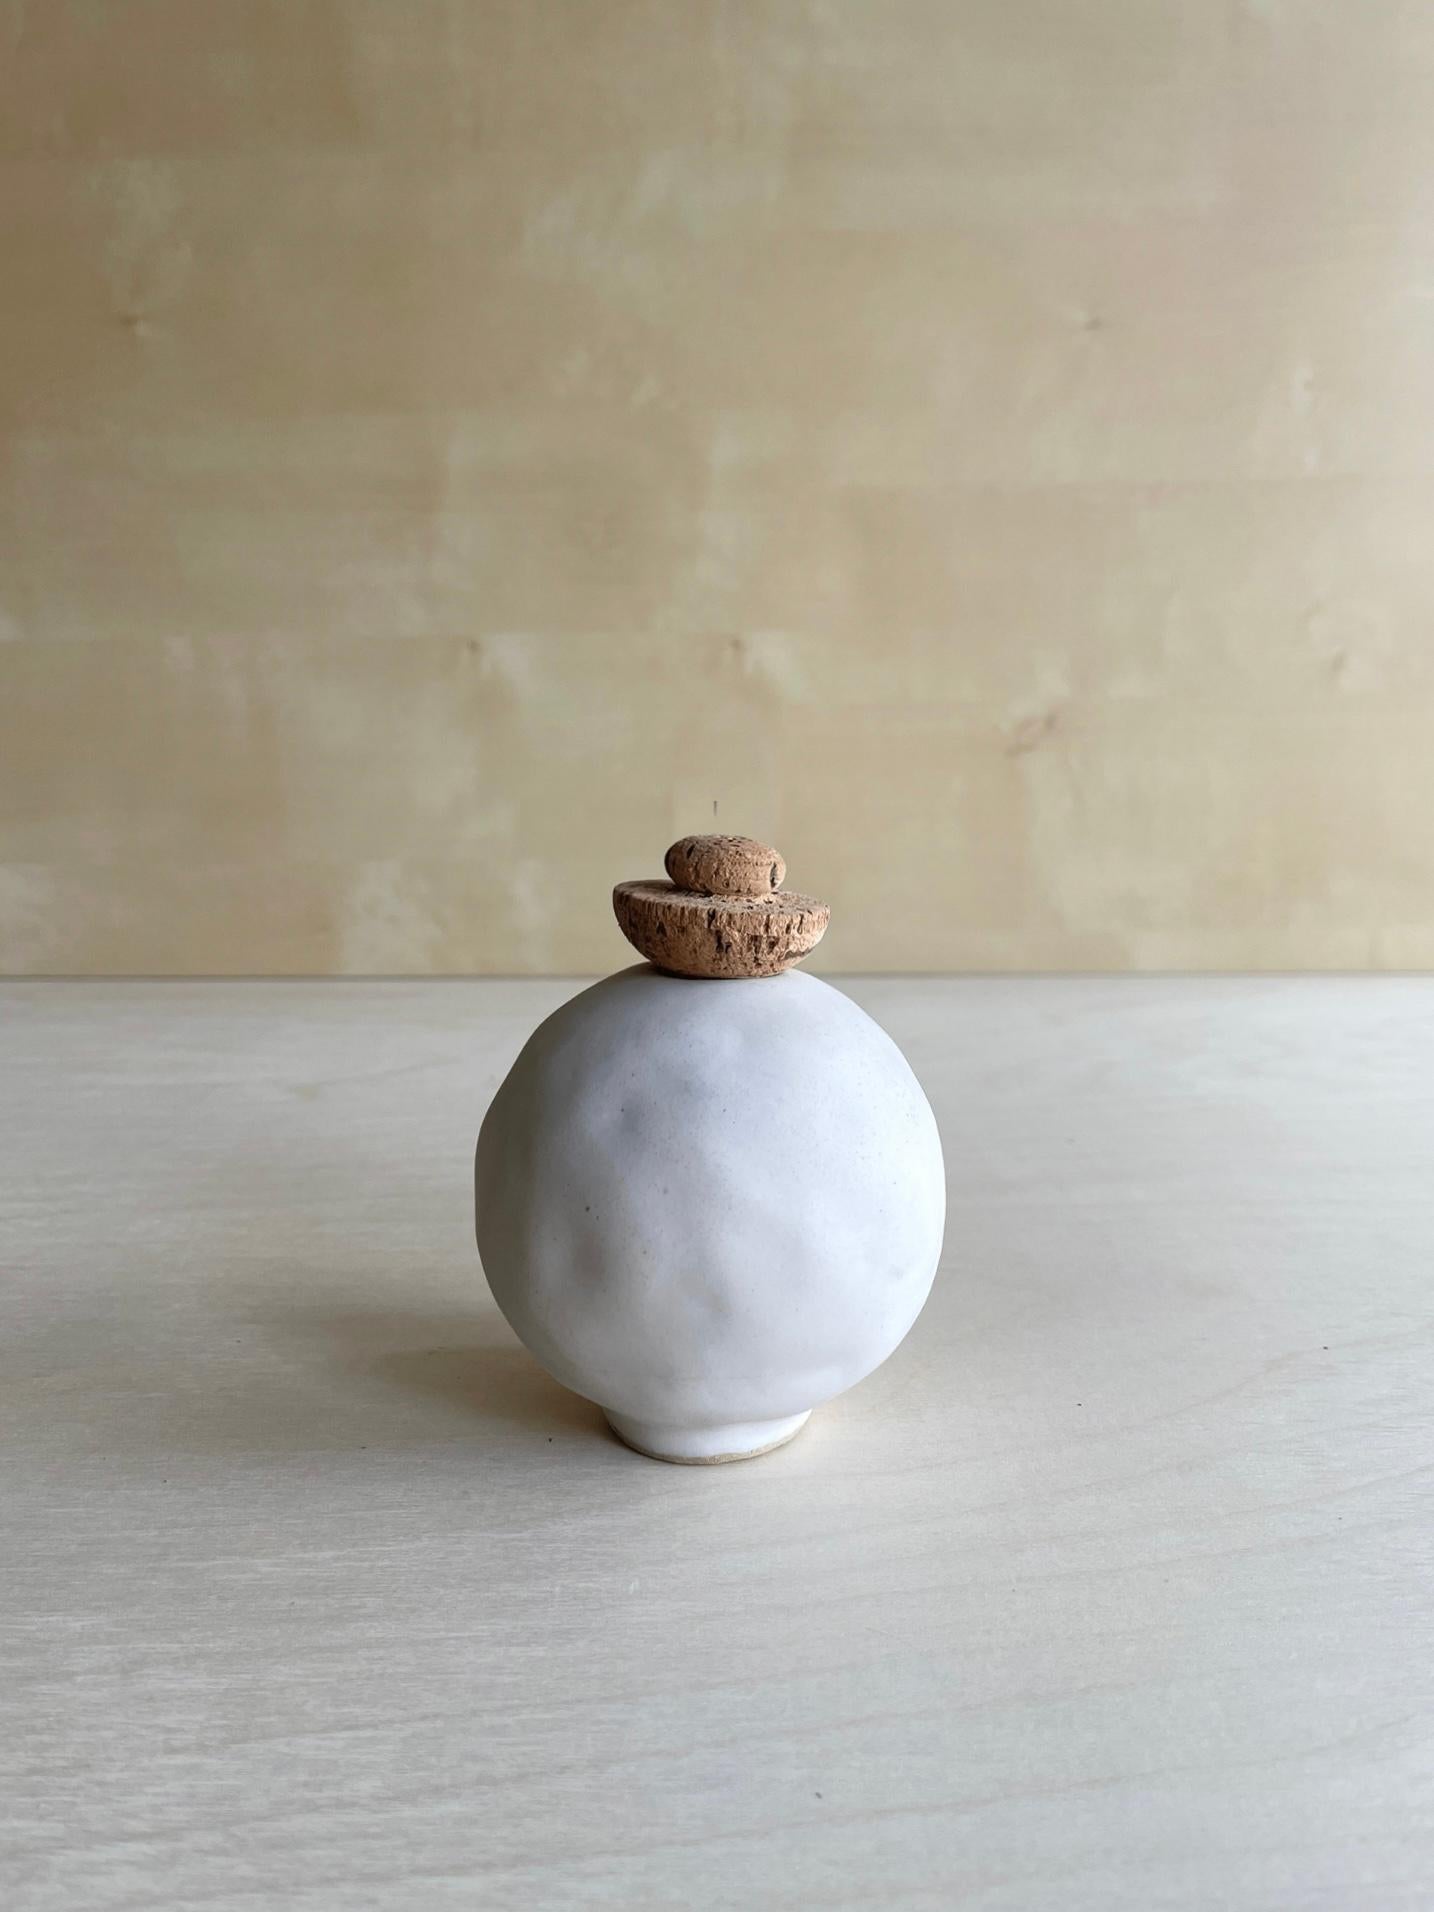 Weiße Edwina-Vase von Meg Morrison
Ein Unikat.
MATERIALIEN: Keramik, Kork.
Abmessungen: Ø 10 x H 13 cm.

Alle Größenangaben sind Richtwerte. Obwohl Vasen wasserdicht sind, kann sich am Boden Kondenswasser bilden. Bitte schützen Sie empfindliche